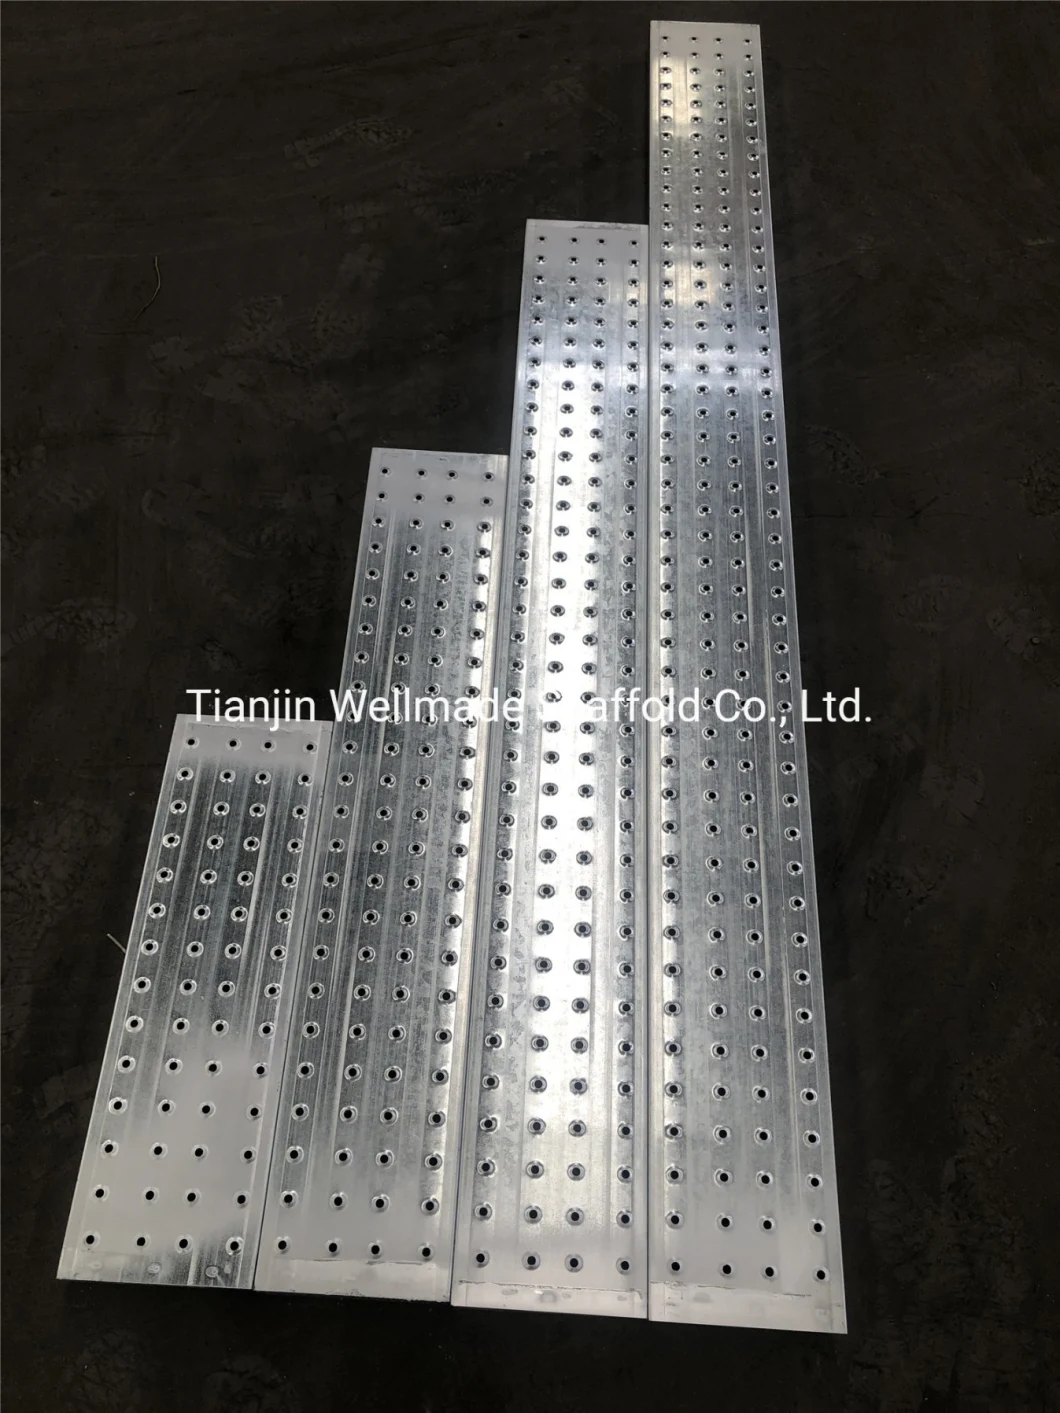 As1577 Standard Kwikstage Scaffolding System Steel Planks Metal Scaffold Board